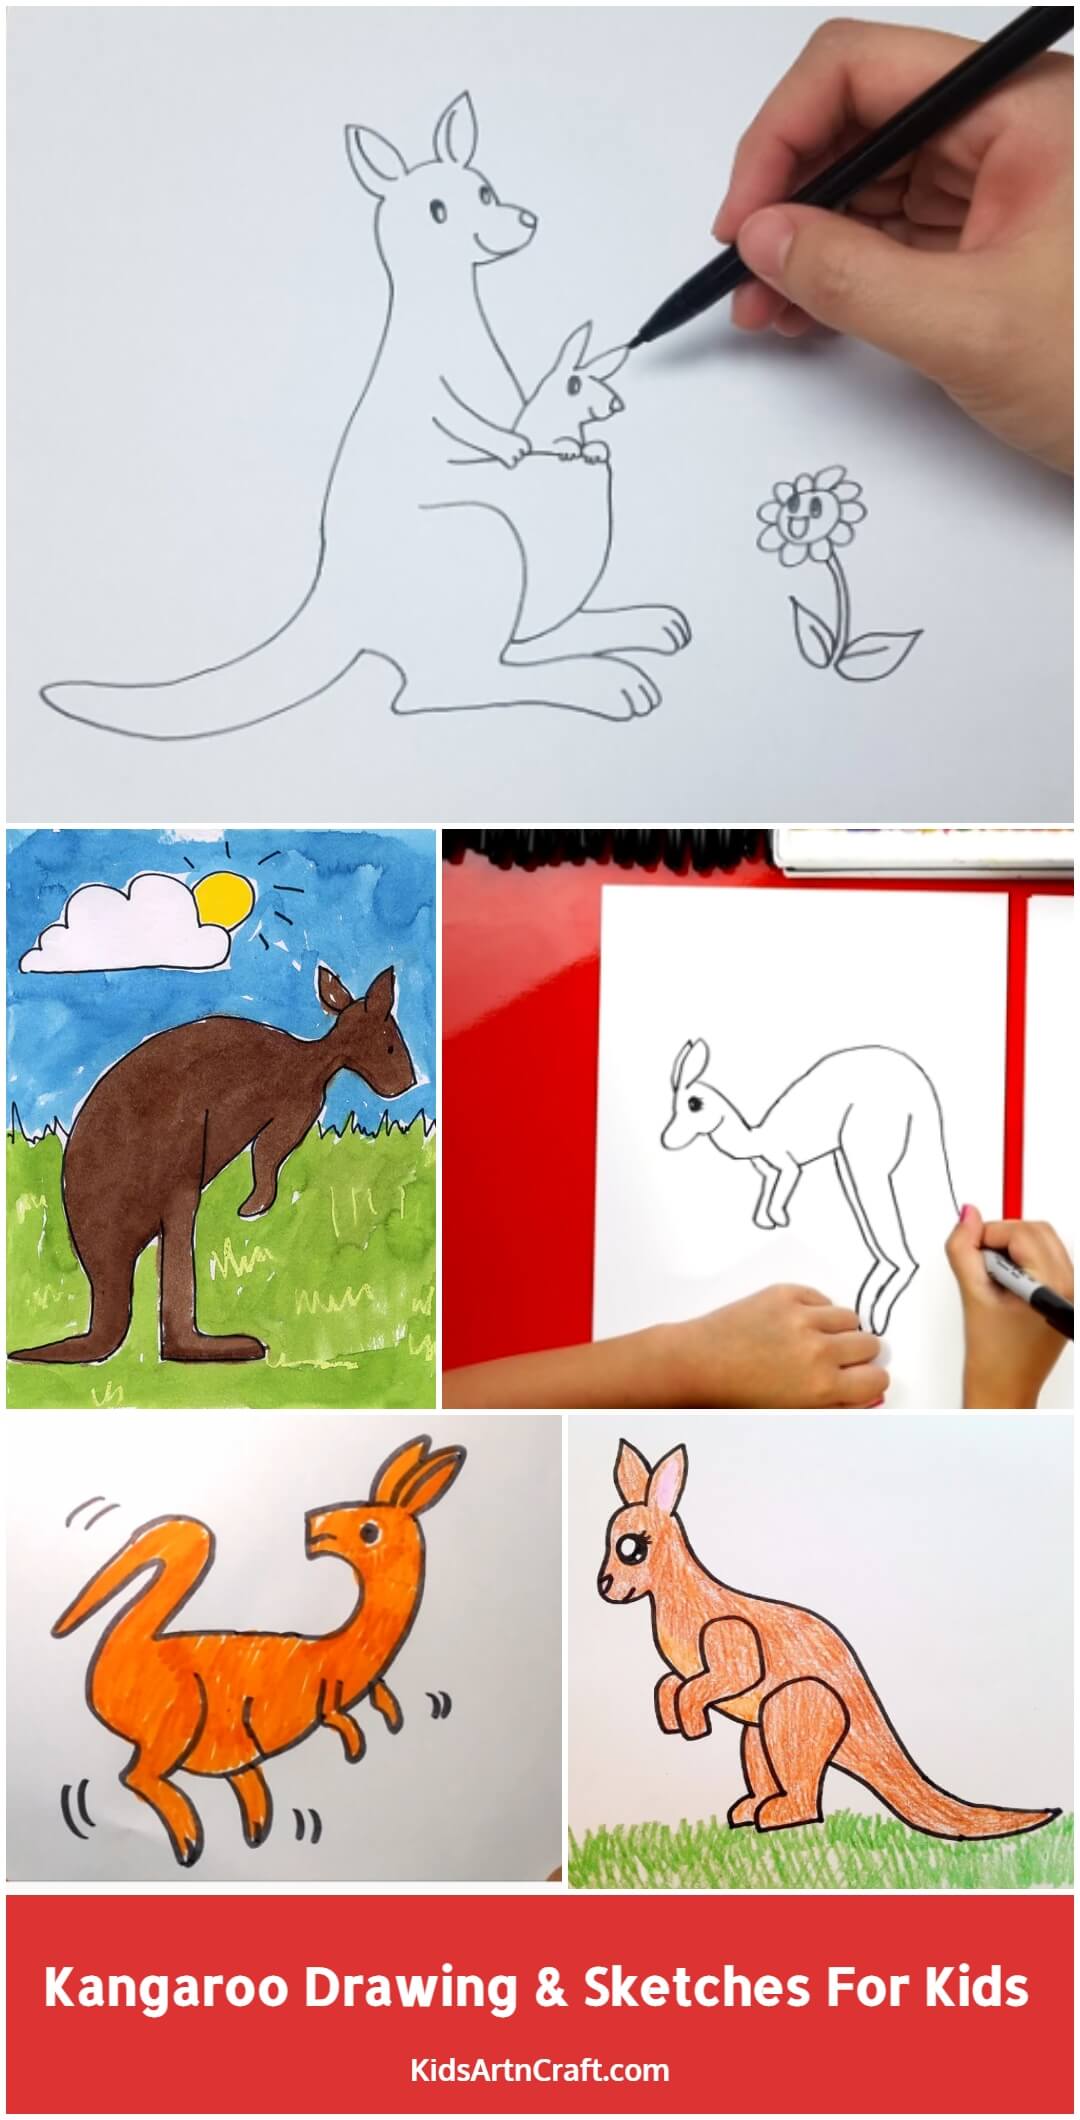 Kangaroo Drawing & Sketches For Kids